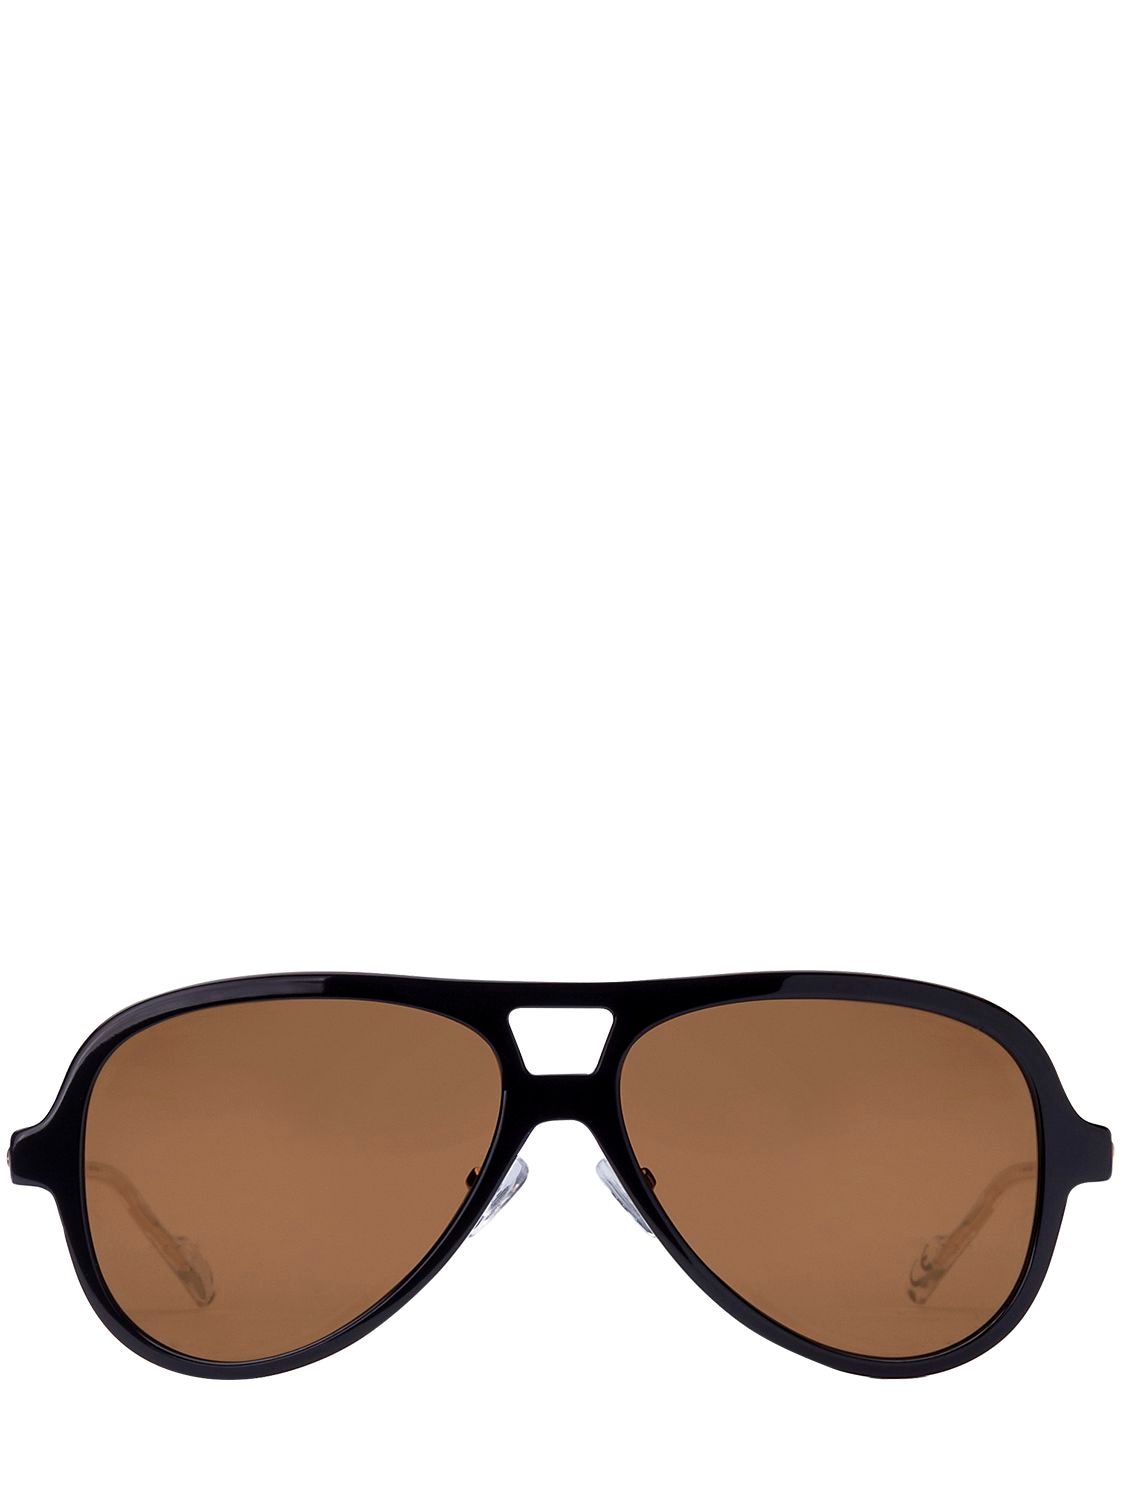 Adidas Originals By Italia Independent Acetate Aviator Sunglasses In Black/gold